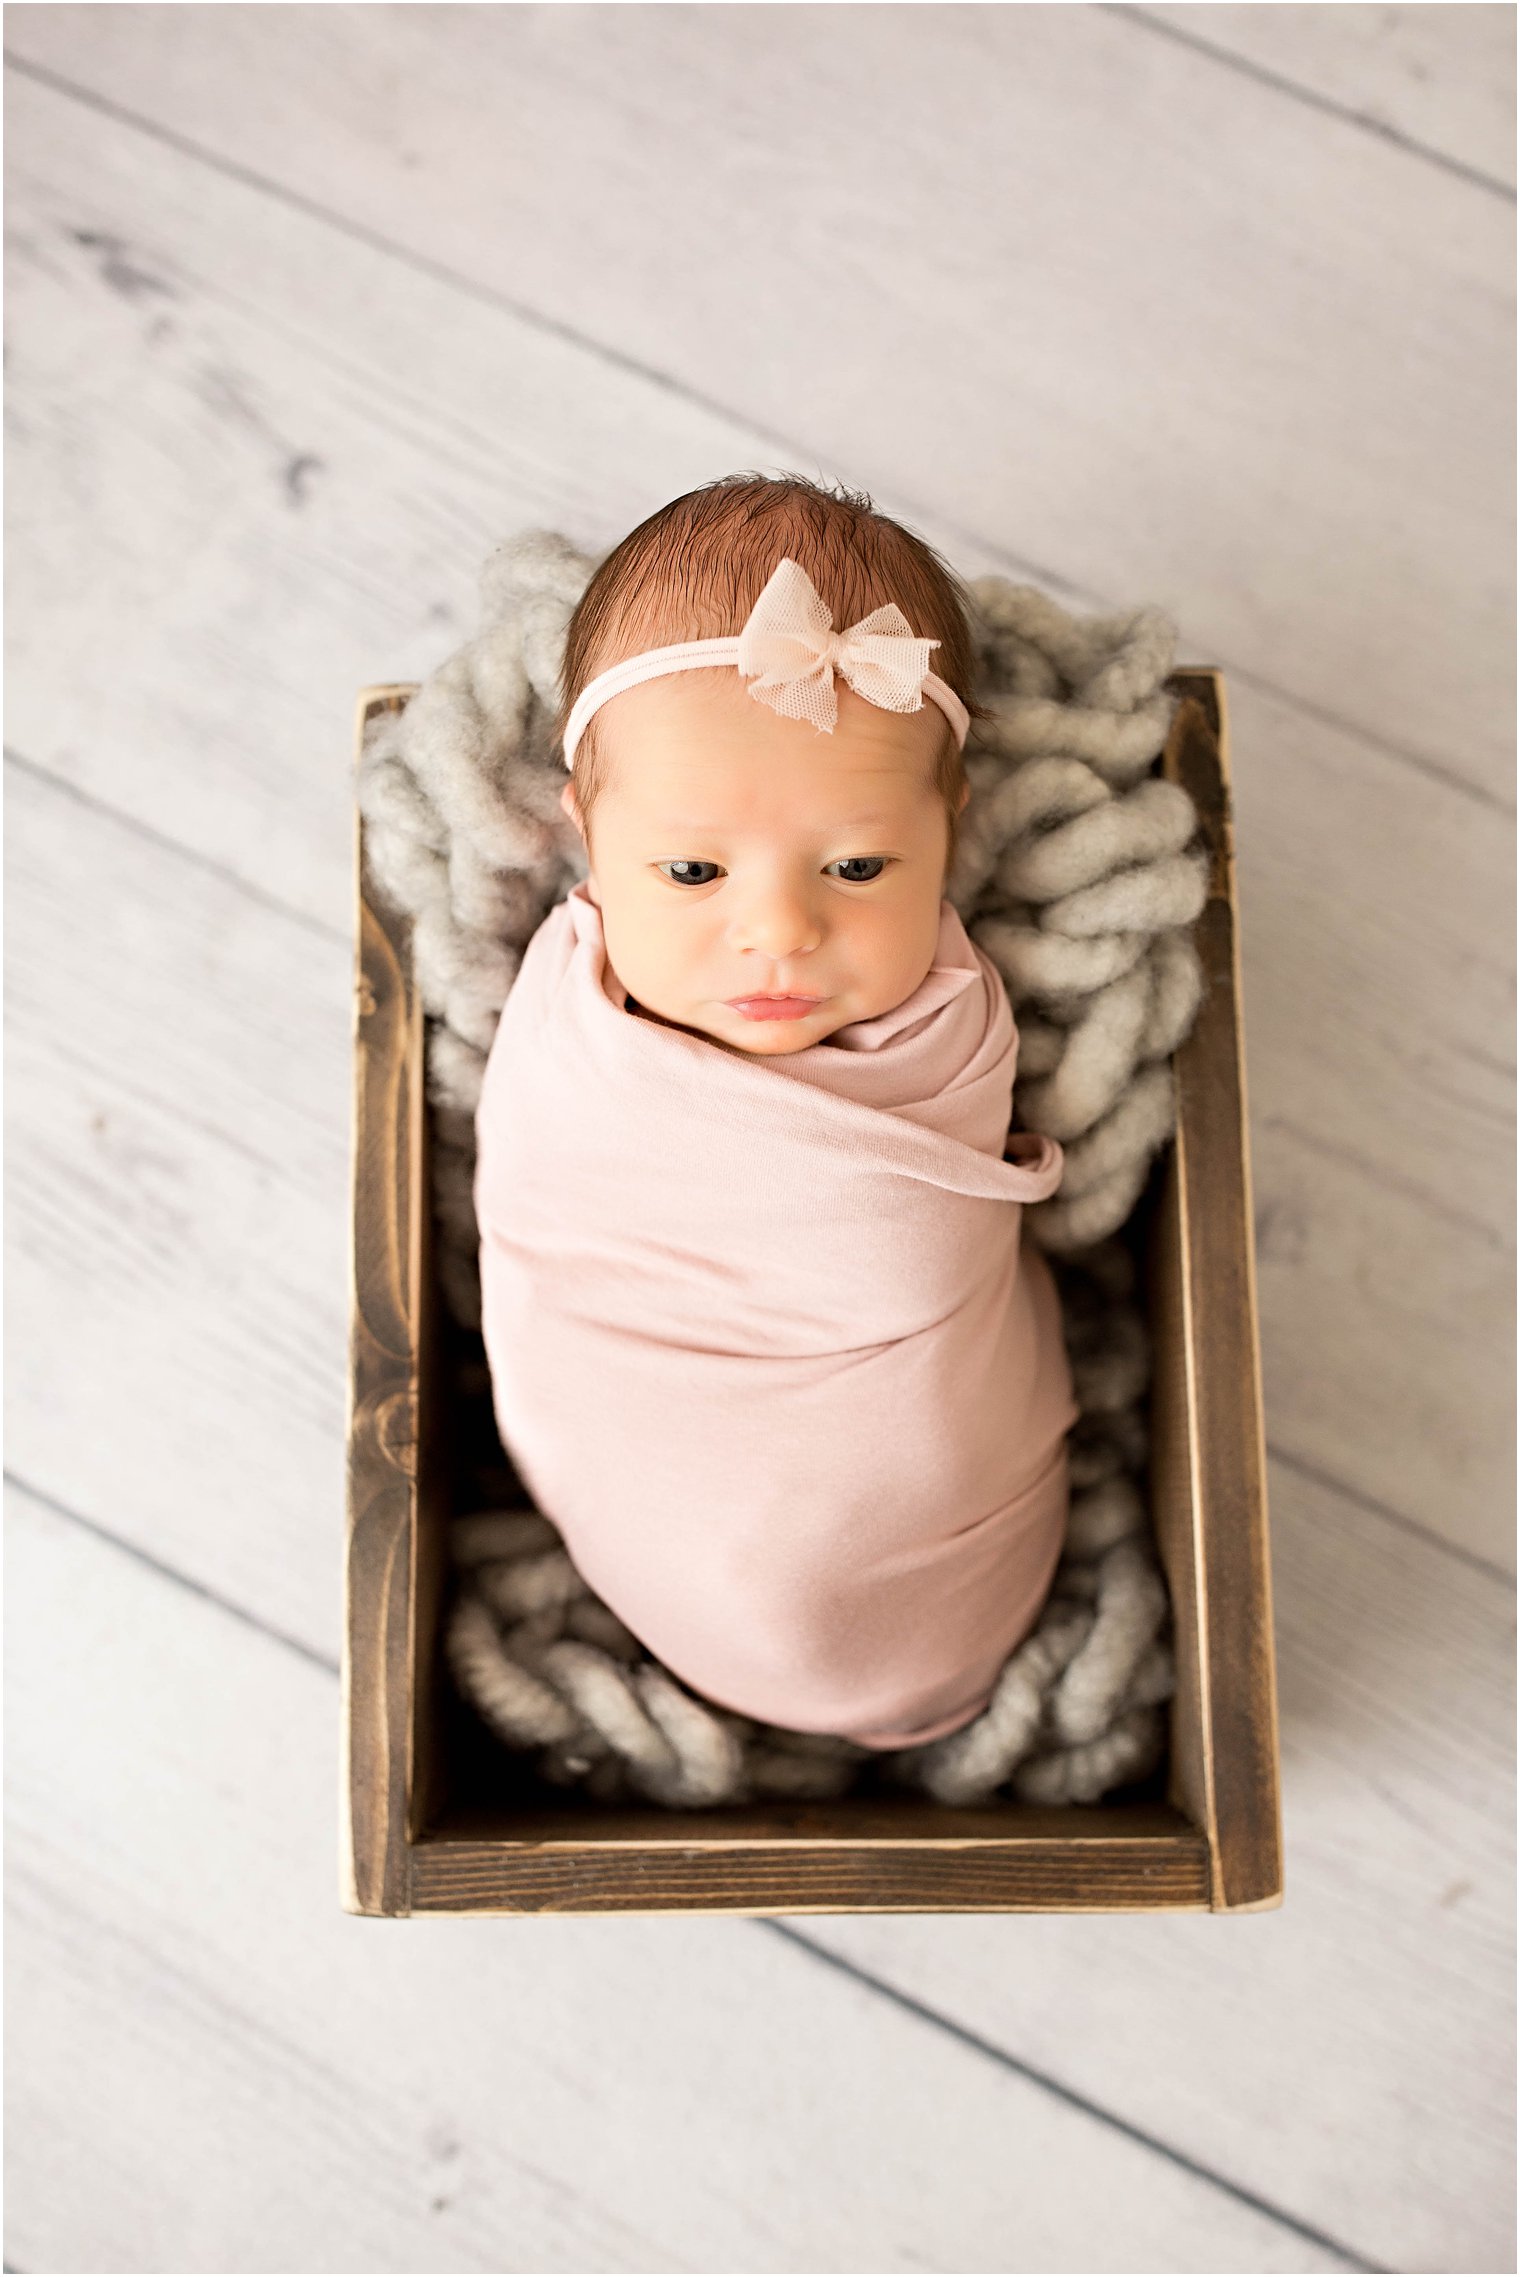 Newborn girl in a crate